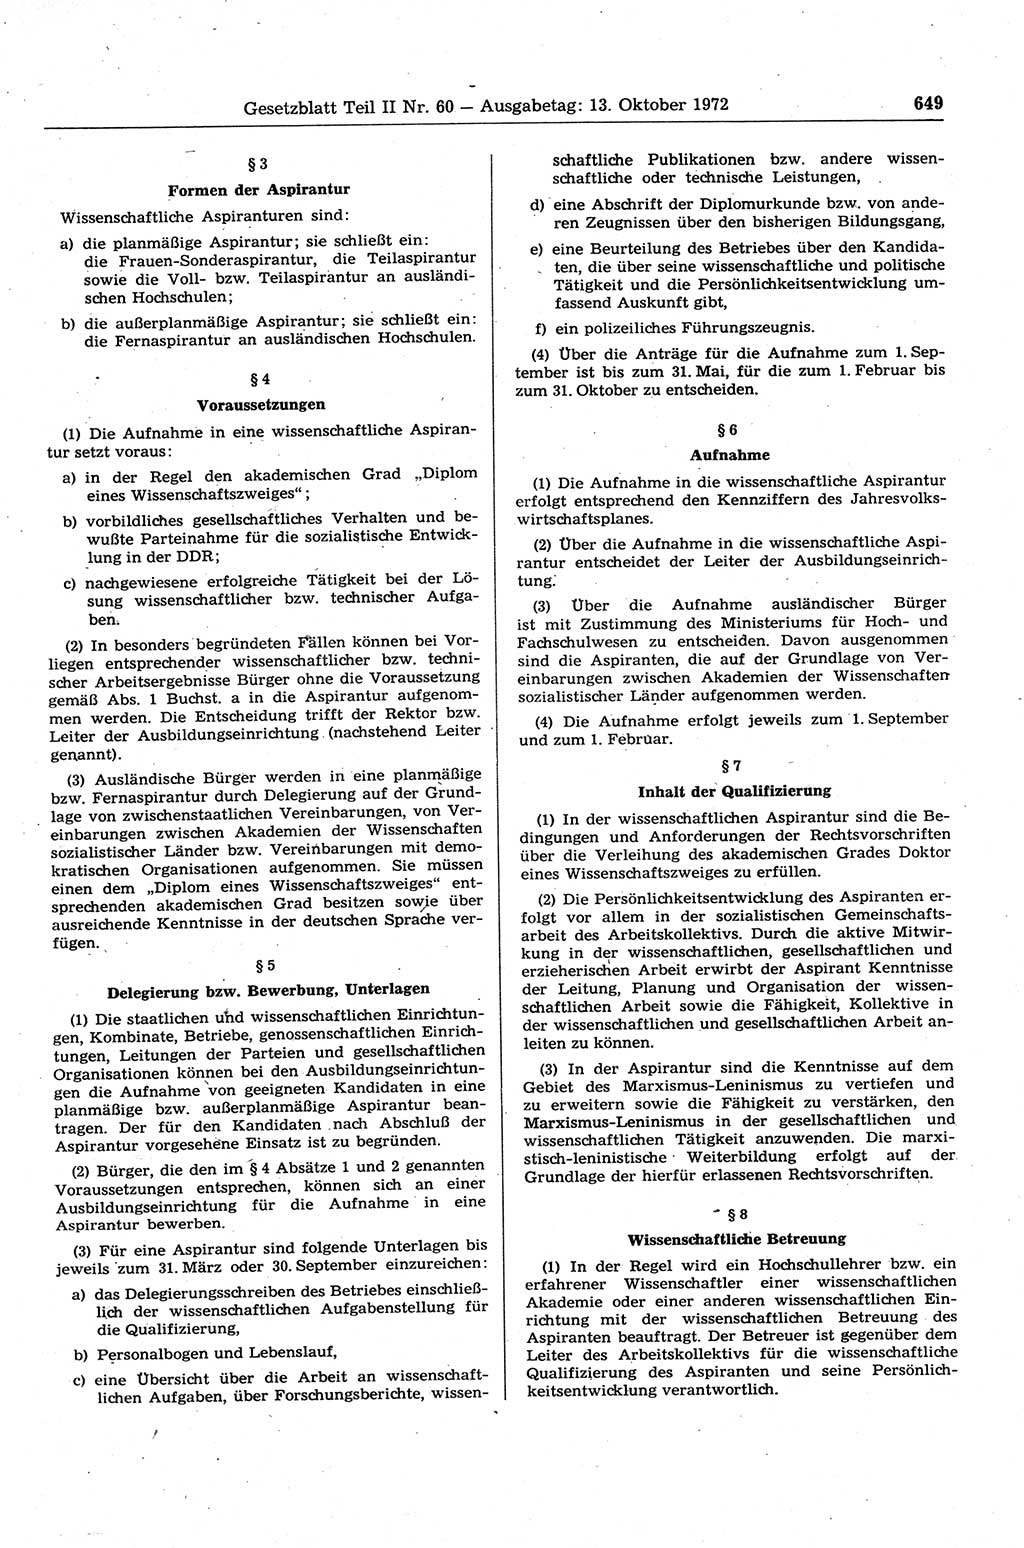 Gesetzblatt (GBl.) der Deutschen Demokratischen Republik (DDR) Teil ⅠⅠ 1972, Seite 649 (GBl. DDR ⅠⅠ 1972, S. 649)